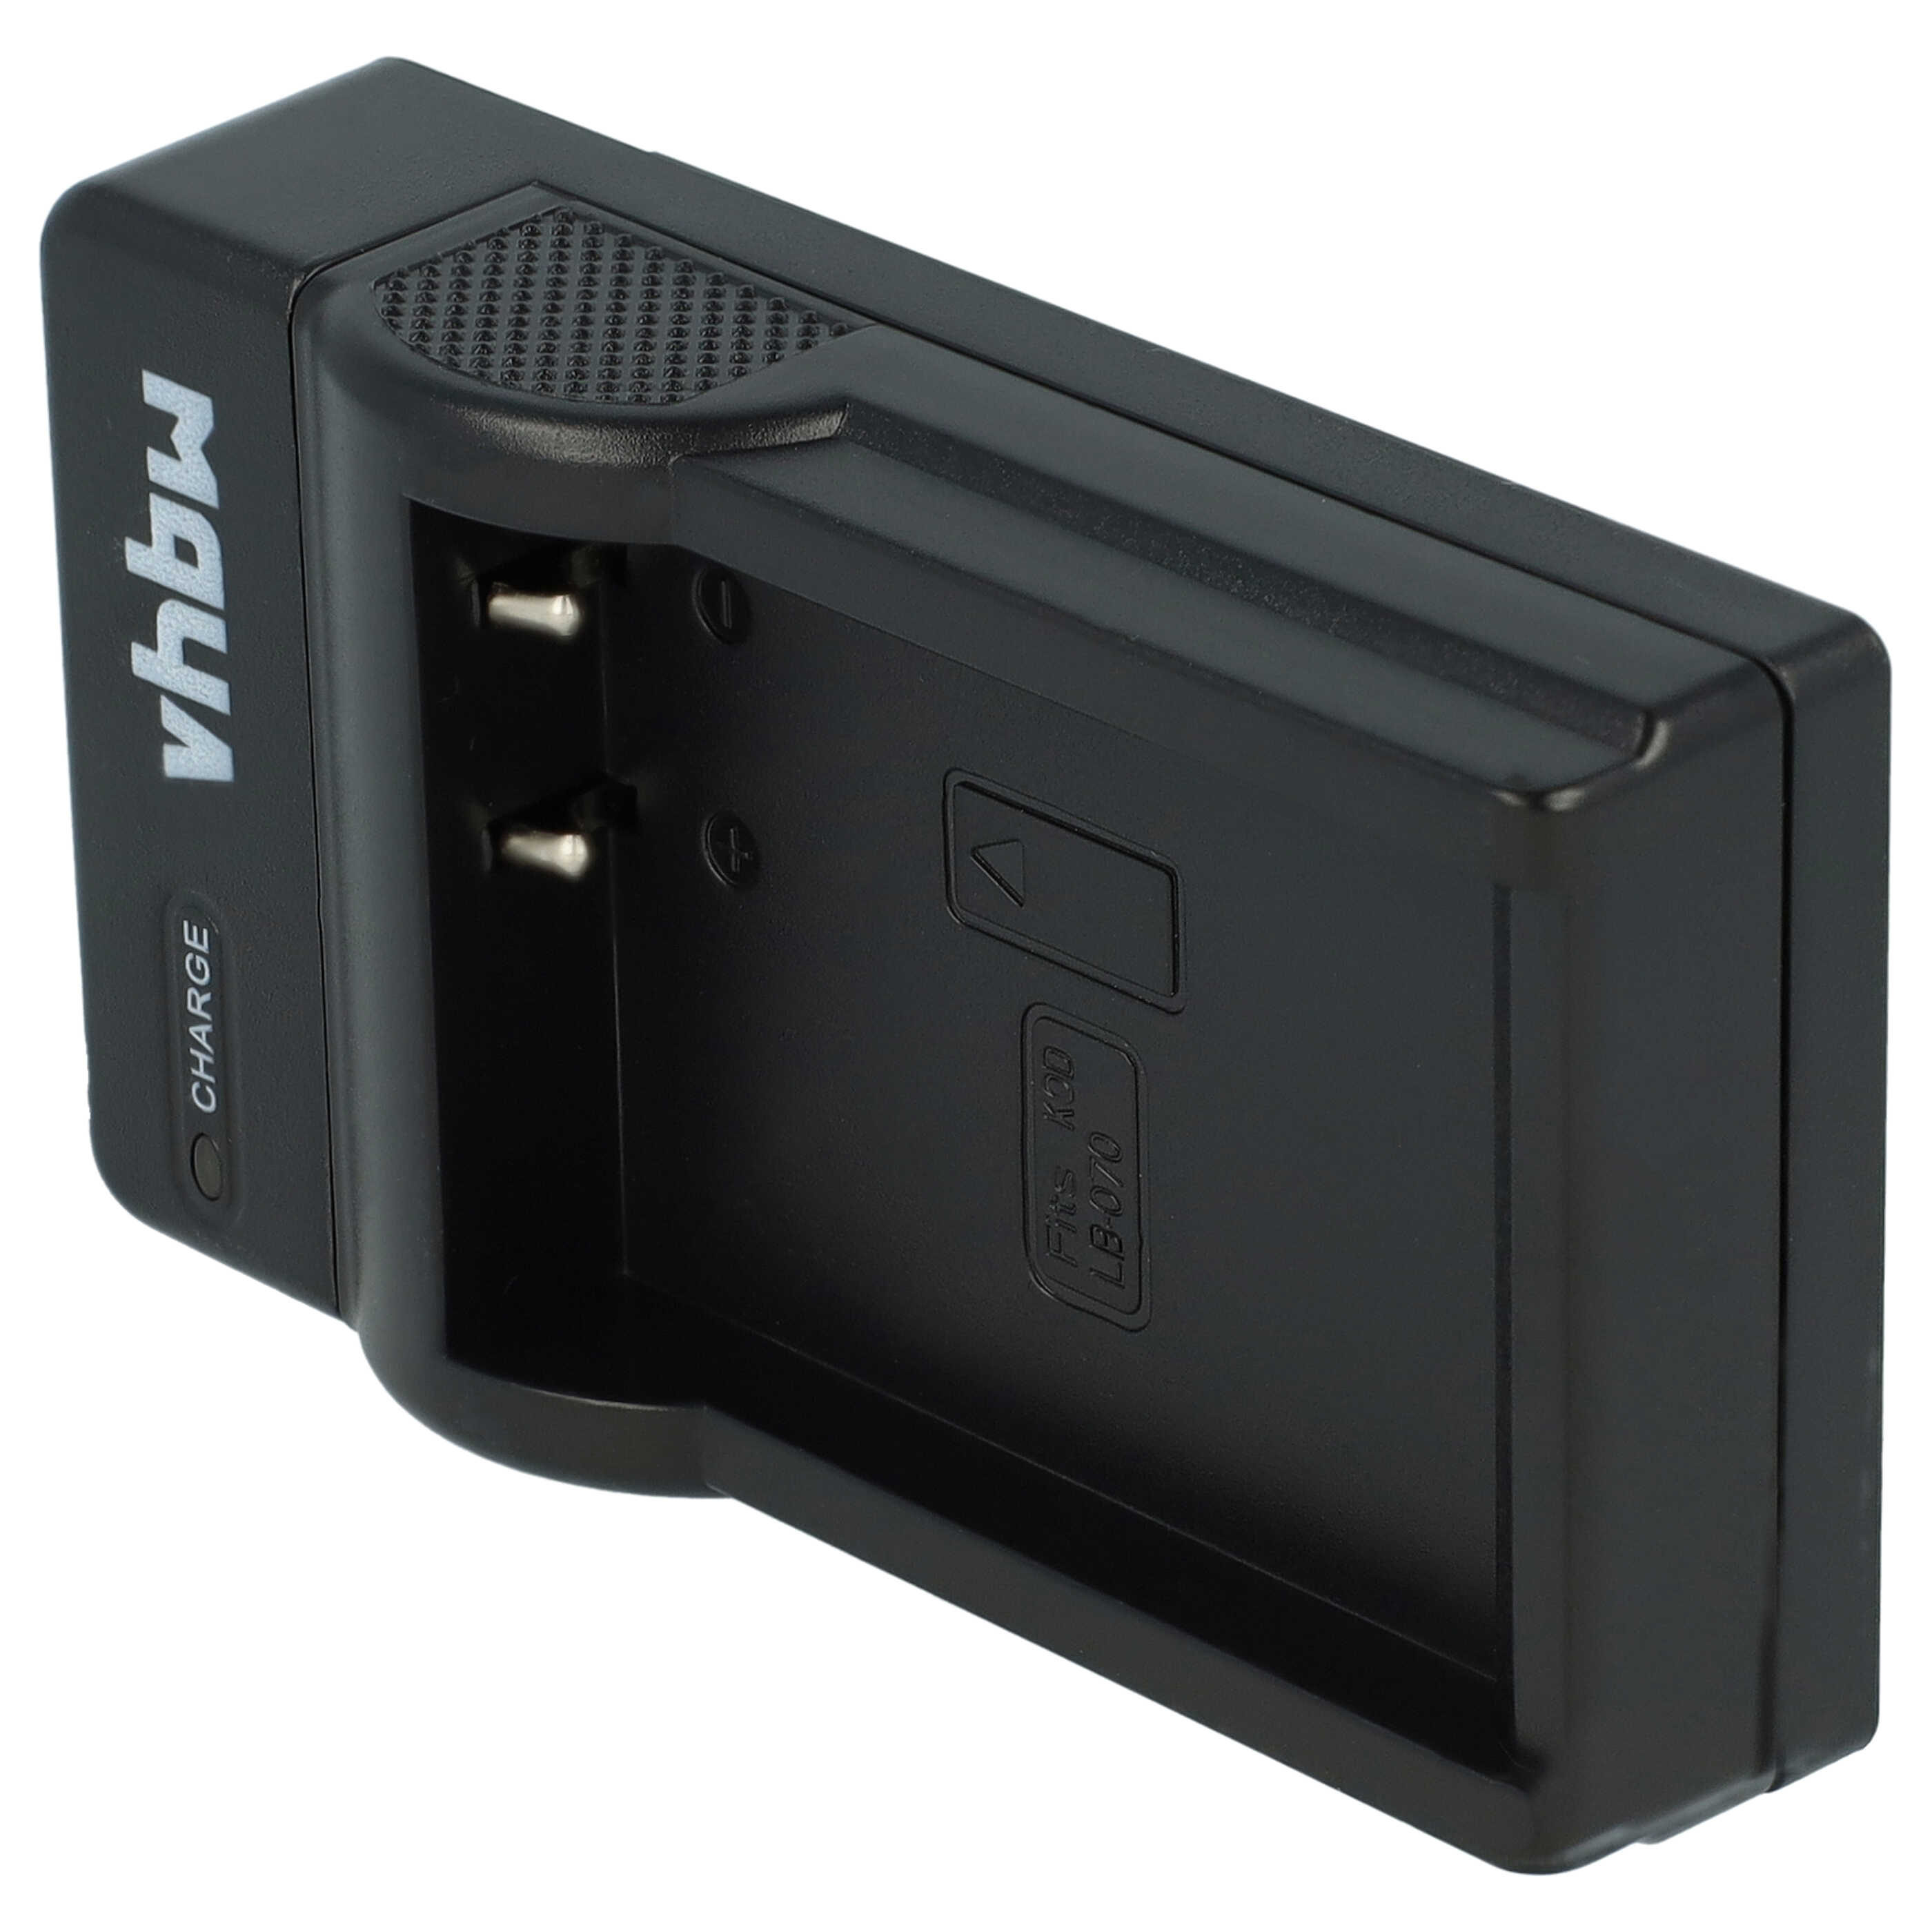 Akku Ladegerät passend für Pixpro S1 Kamera u.a. - 0,5 A, 8,4 V